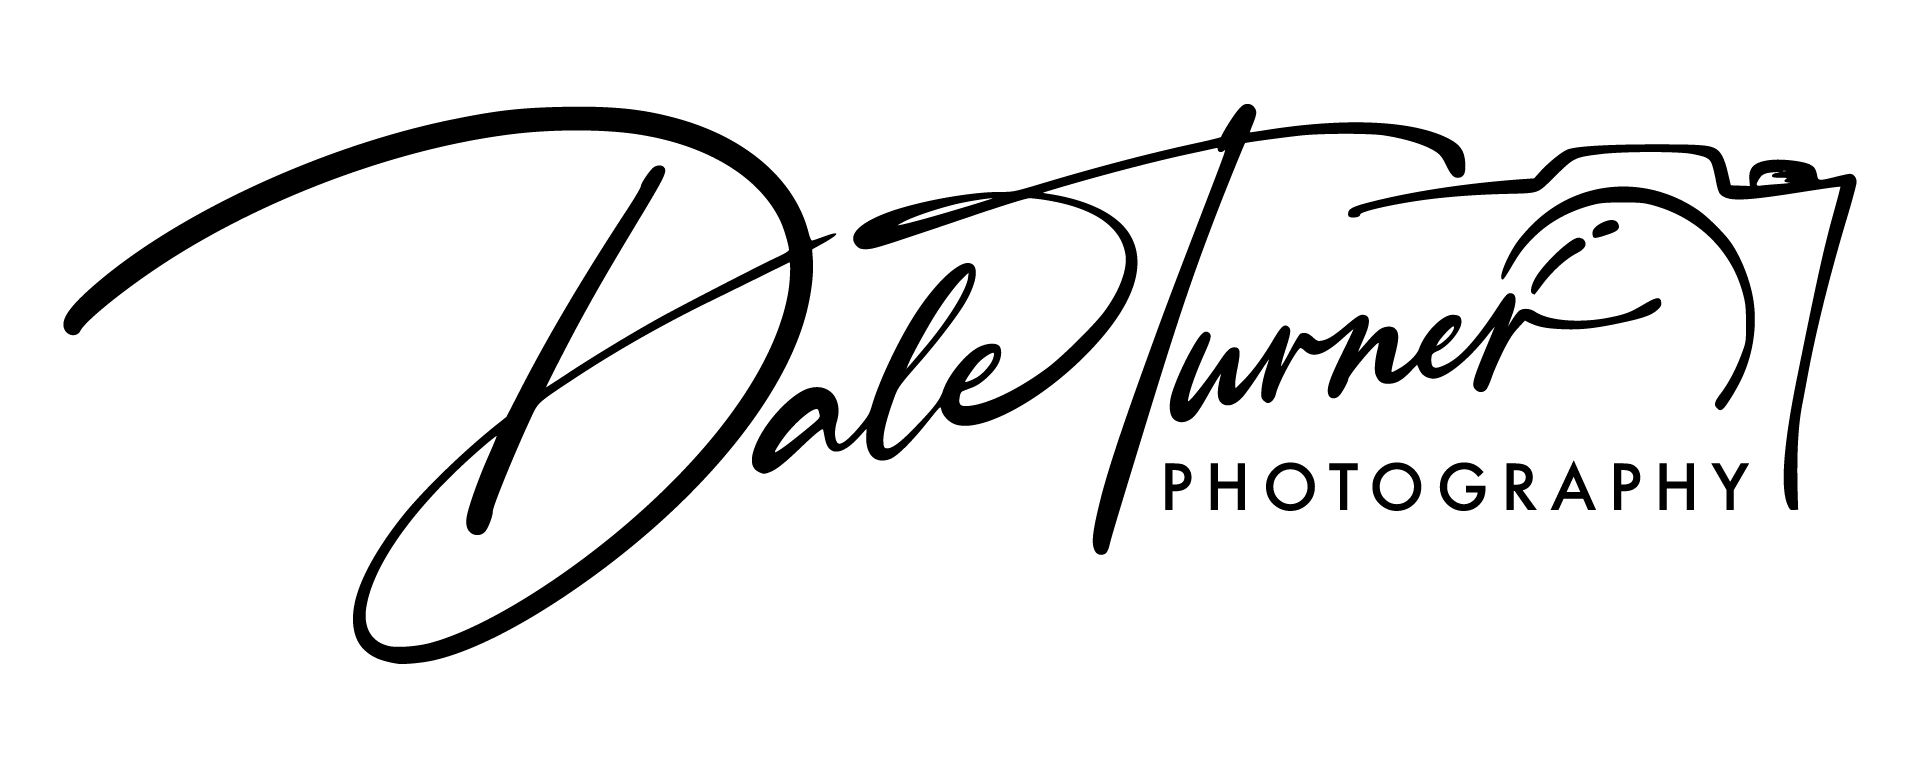 Dale Turner Photography logo